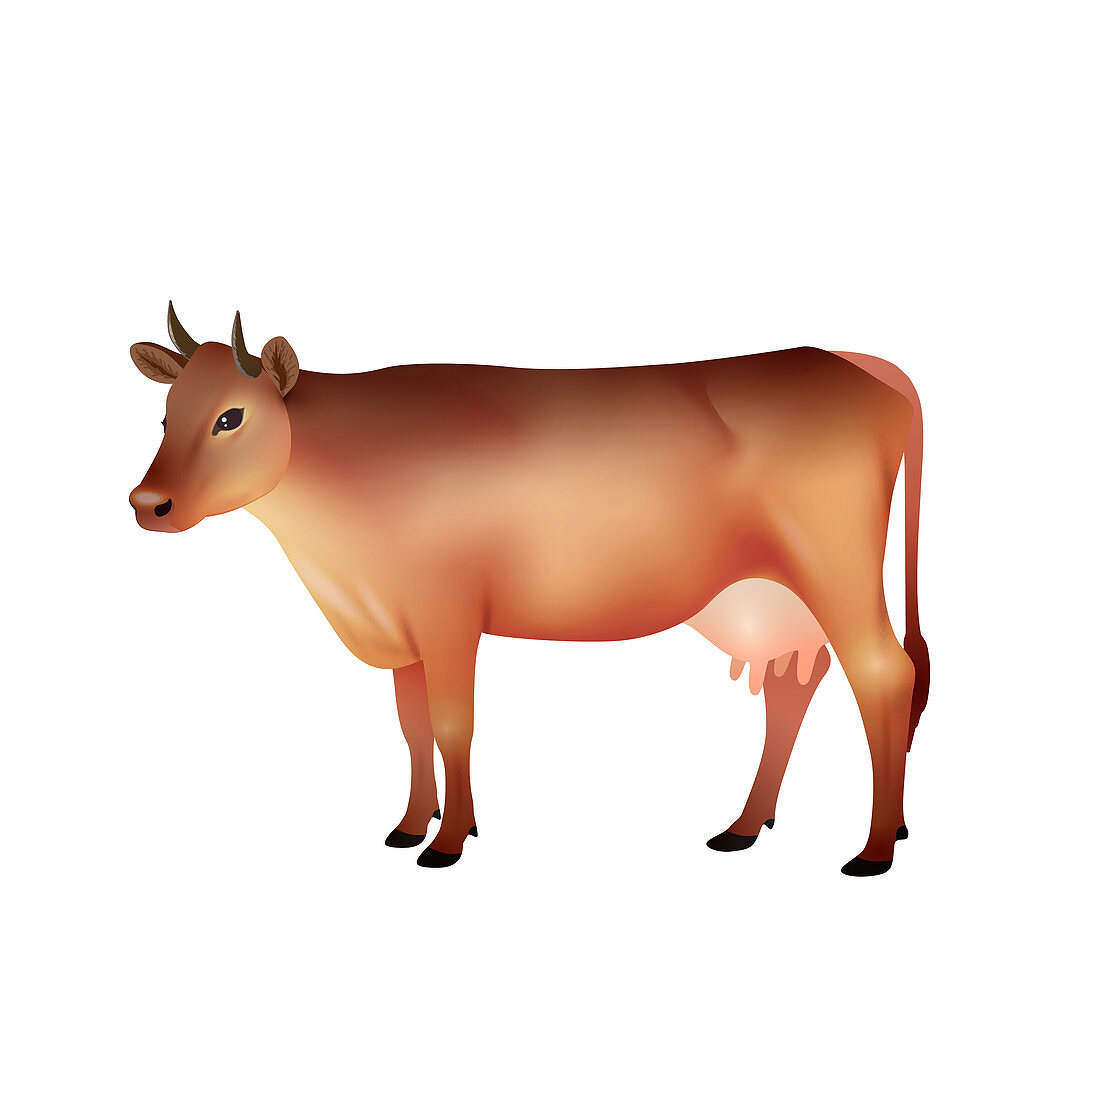 Cow, illustration